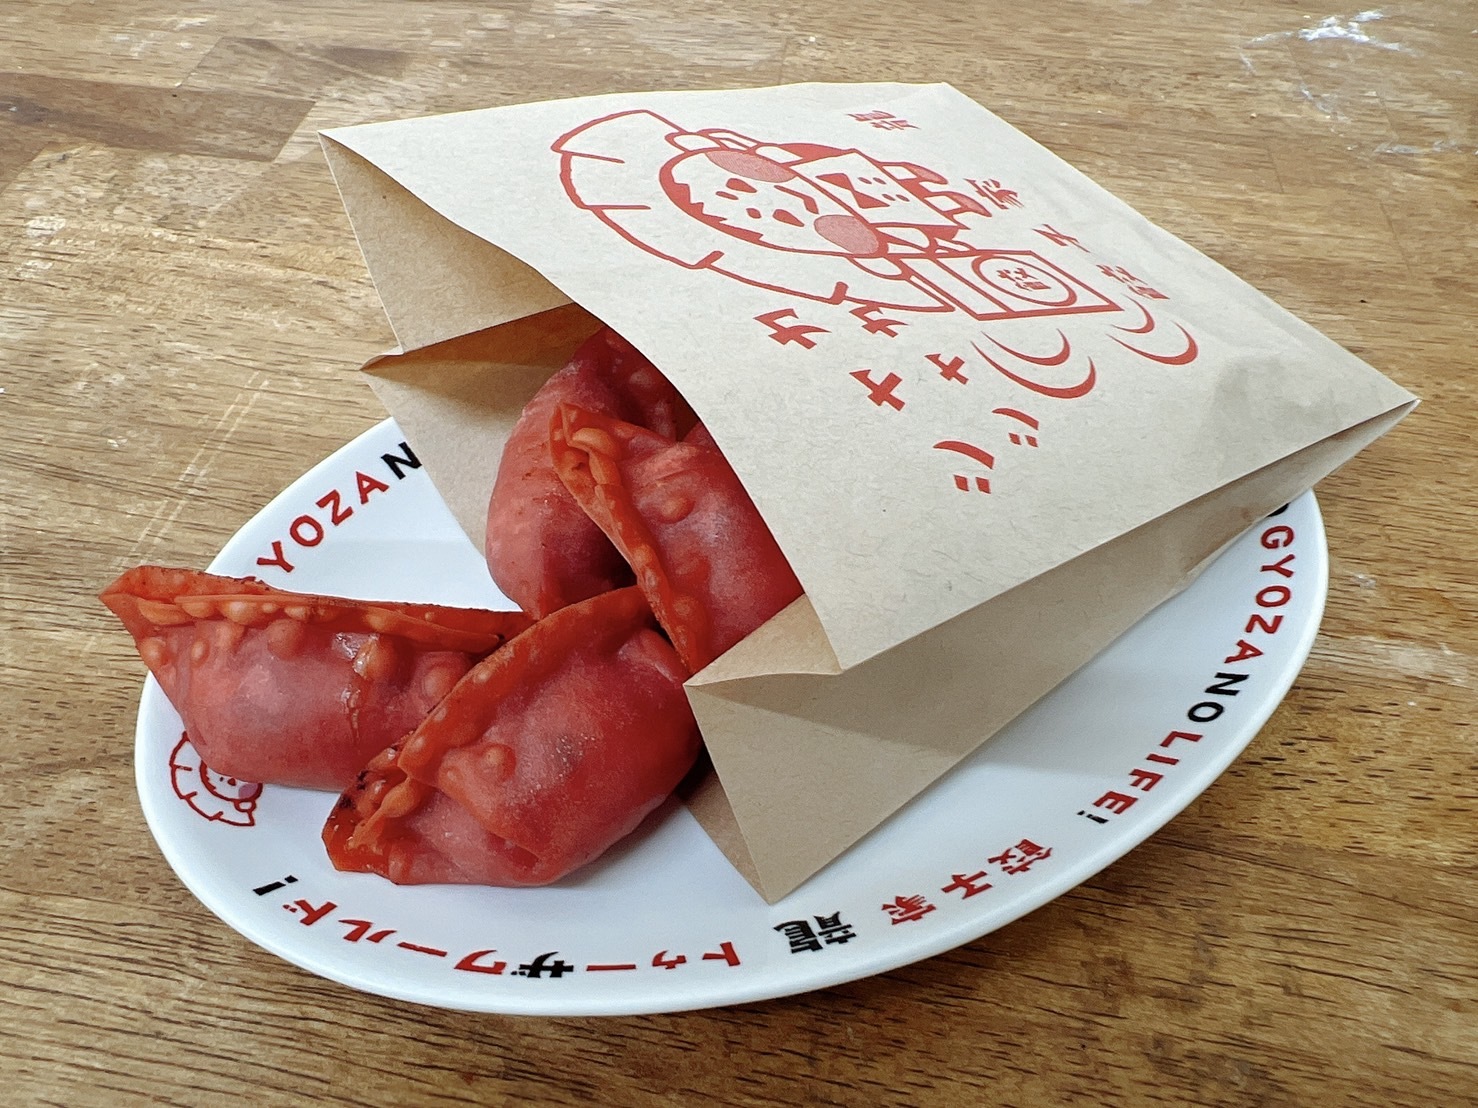 「カープ餃子」を提供している餃子家 龍が夏にぴったりな
「フレフレ！カープ揚げ餃子」を7/1より期間限定で発売！